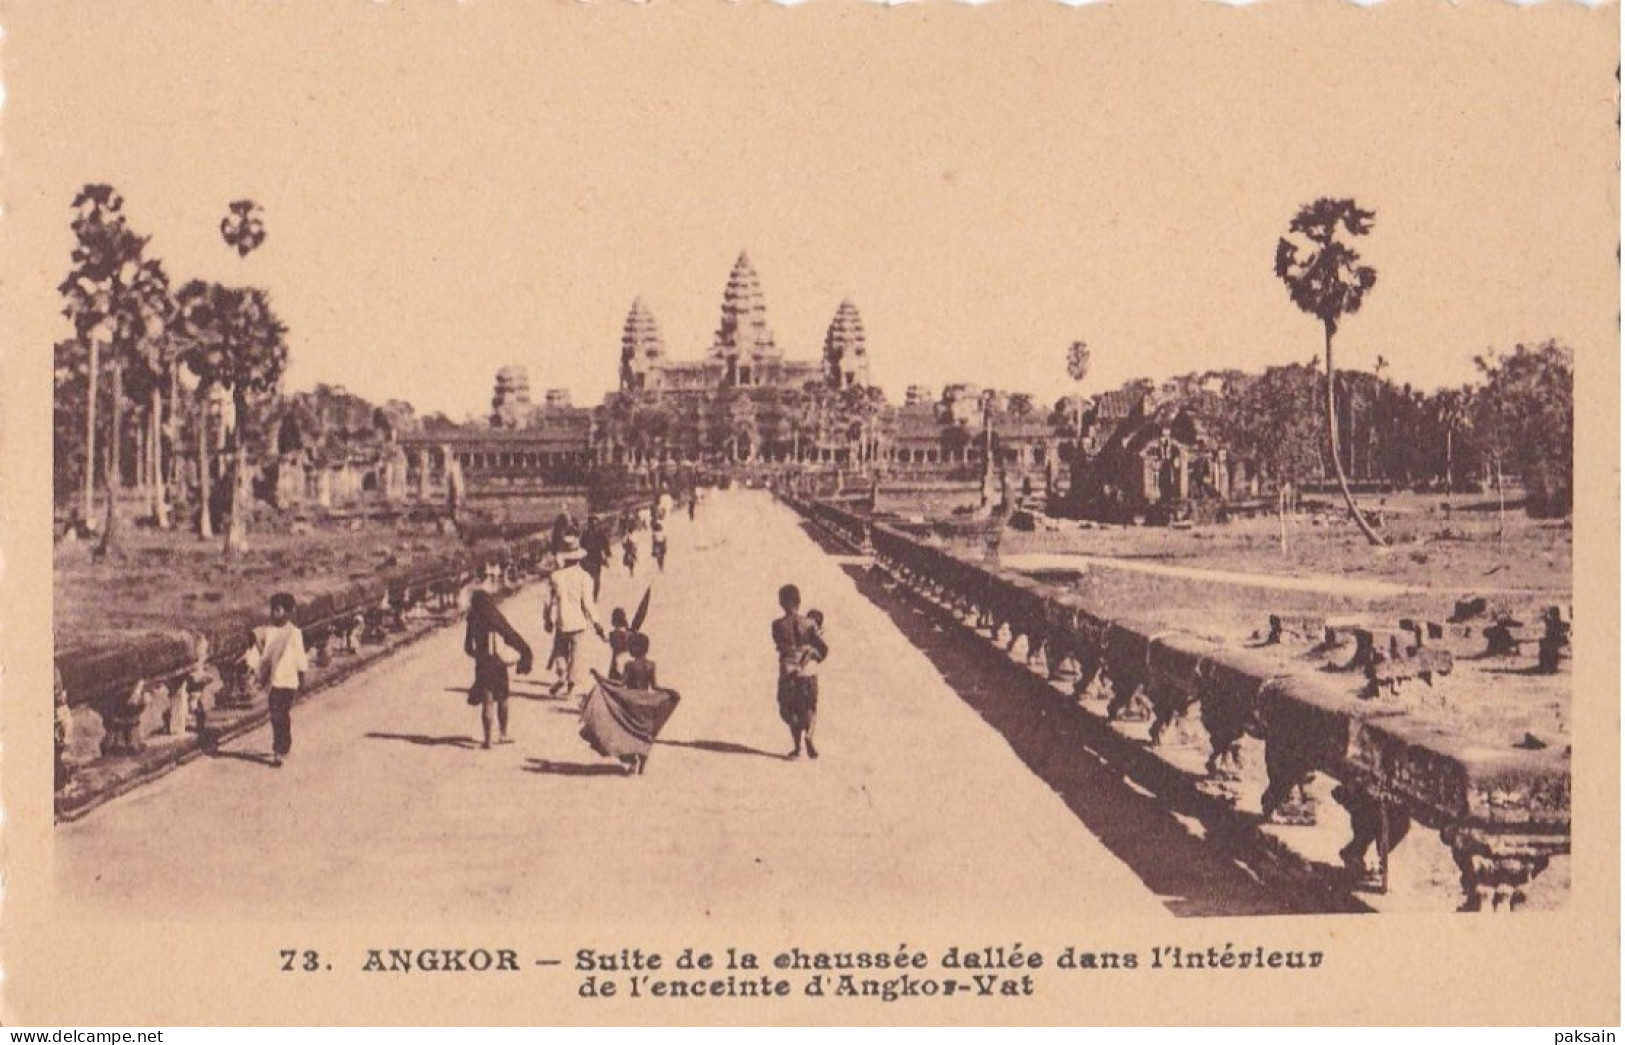 ANGKOR - Suite De La Chaussée Dallée Dans L'intérieur De L'enceinte D'Angkor-Vat Paulussen N° 73 CAMBODGE Indochine Asie - Cambodia